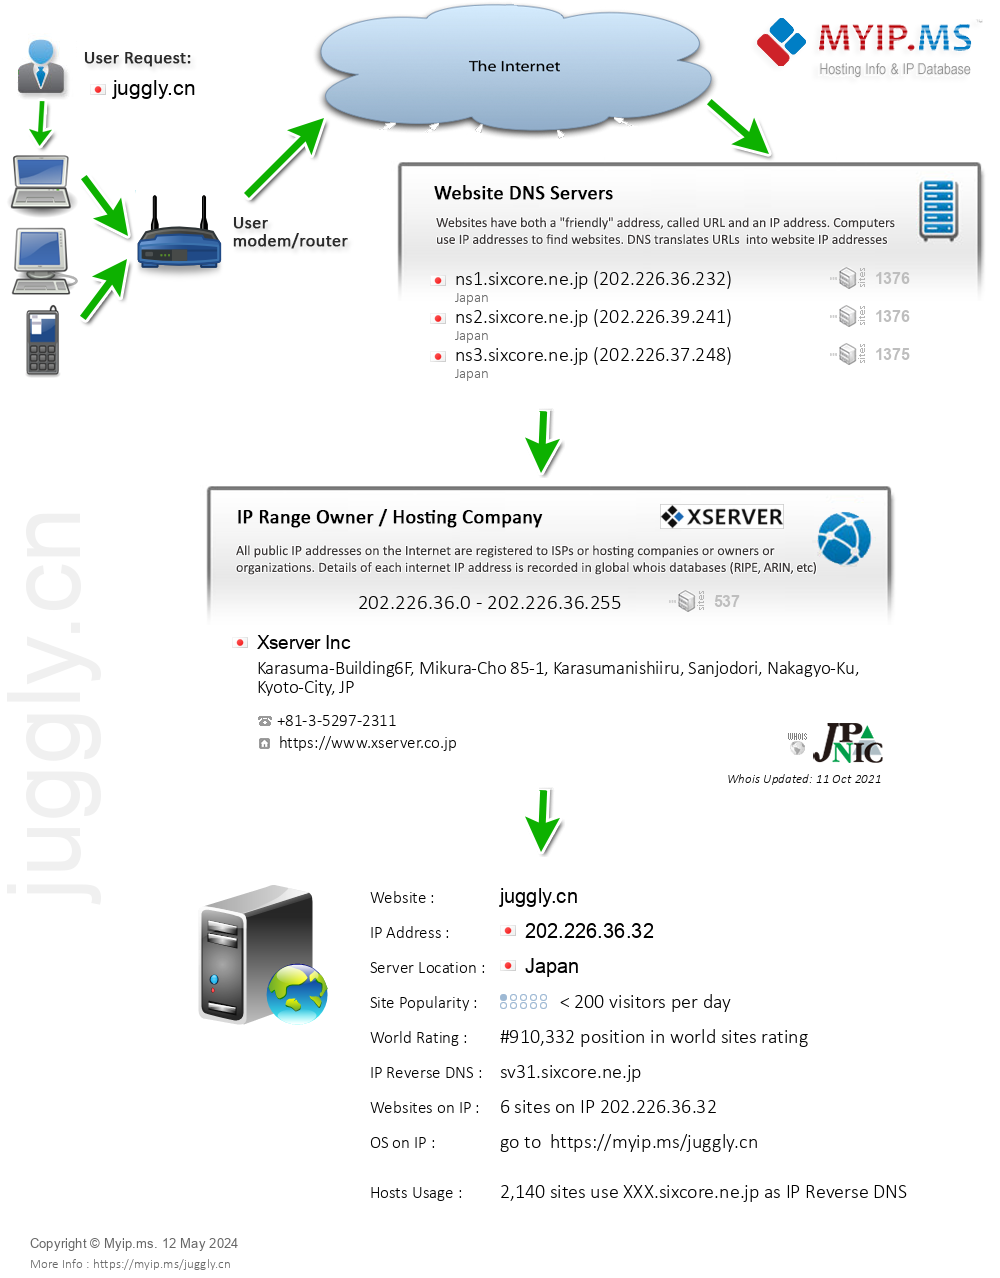 Juggly.cn - Website Hosting Visual IP Diagram